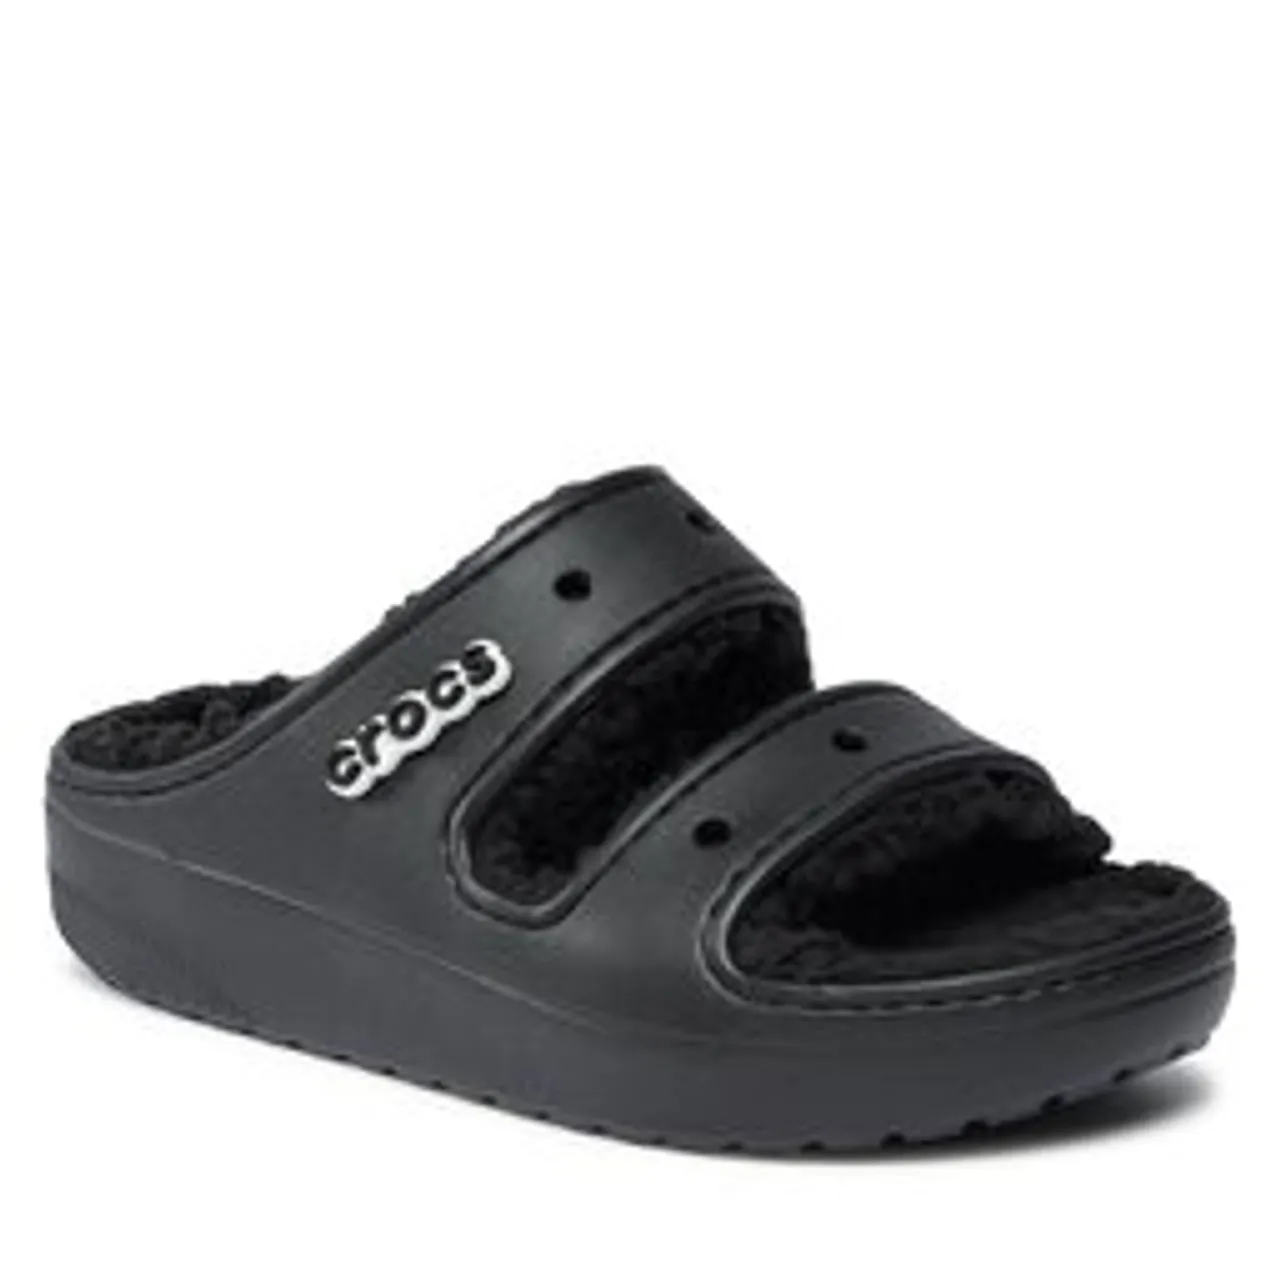 Pantoletten Crocs Crocs Classic Cozzy Sandal 207446 Black/Black 060